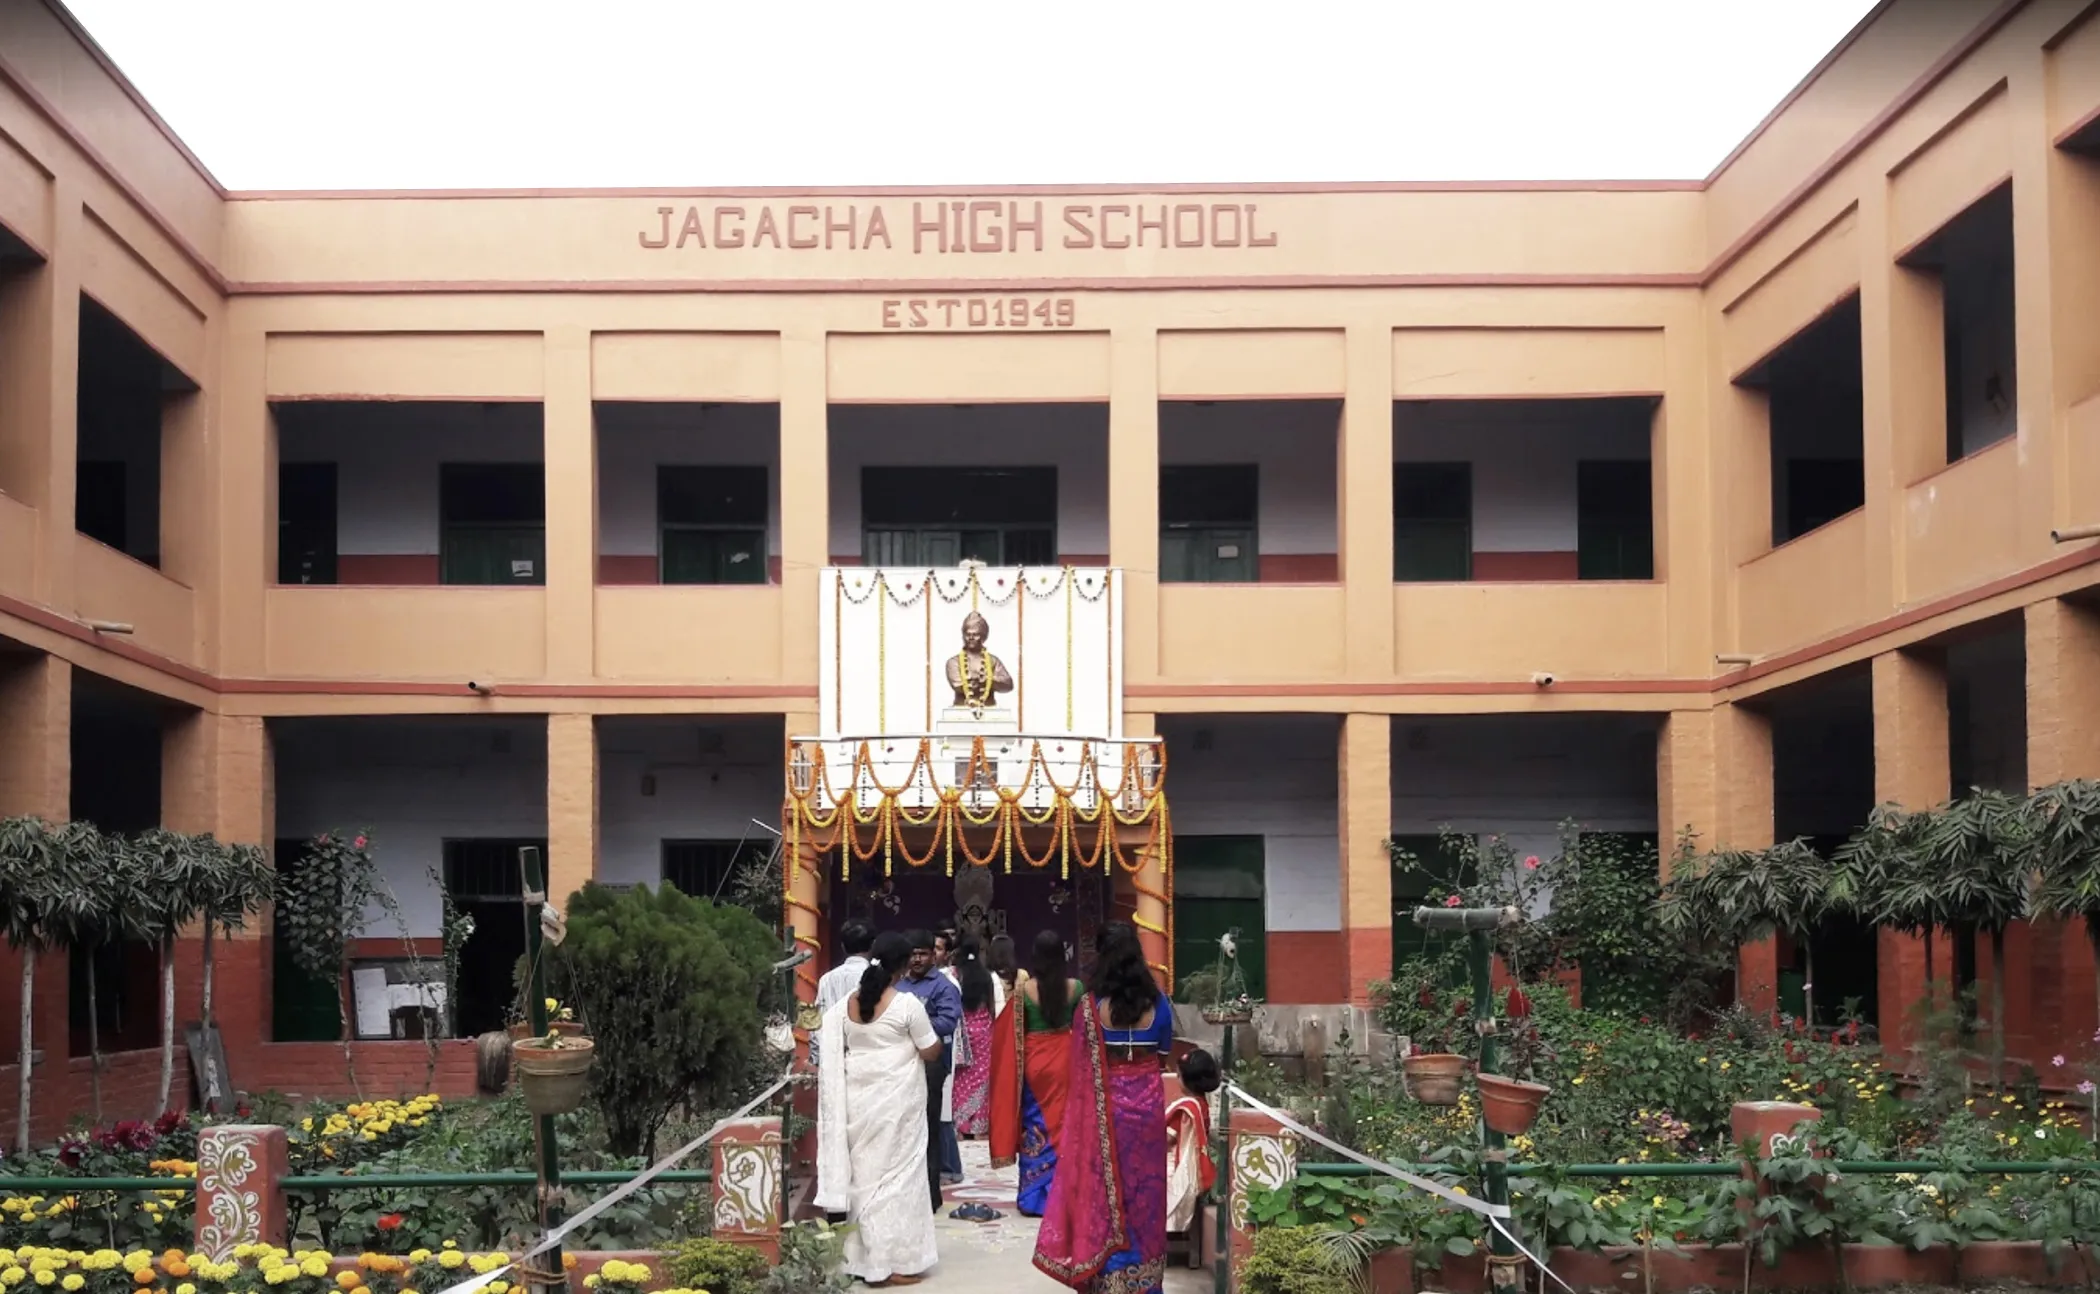 Jagacha High School